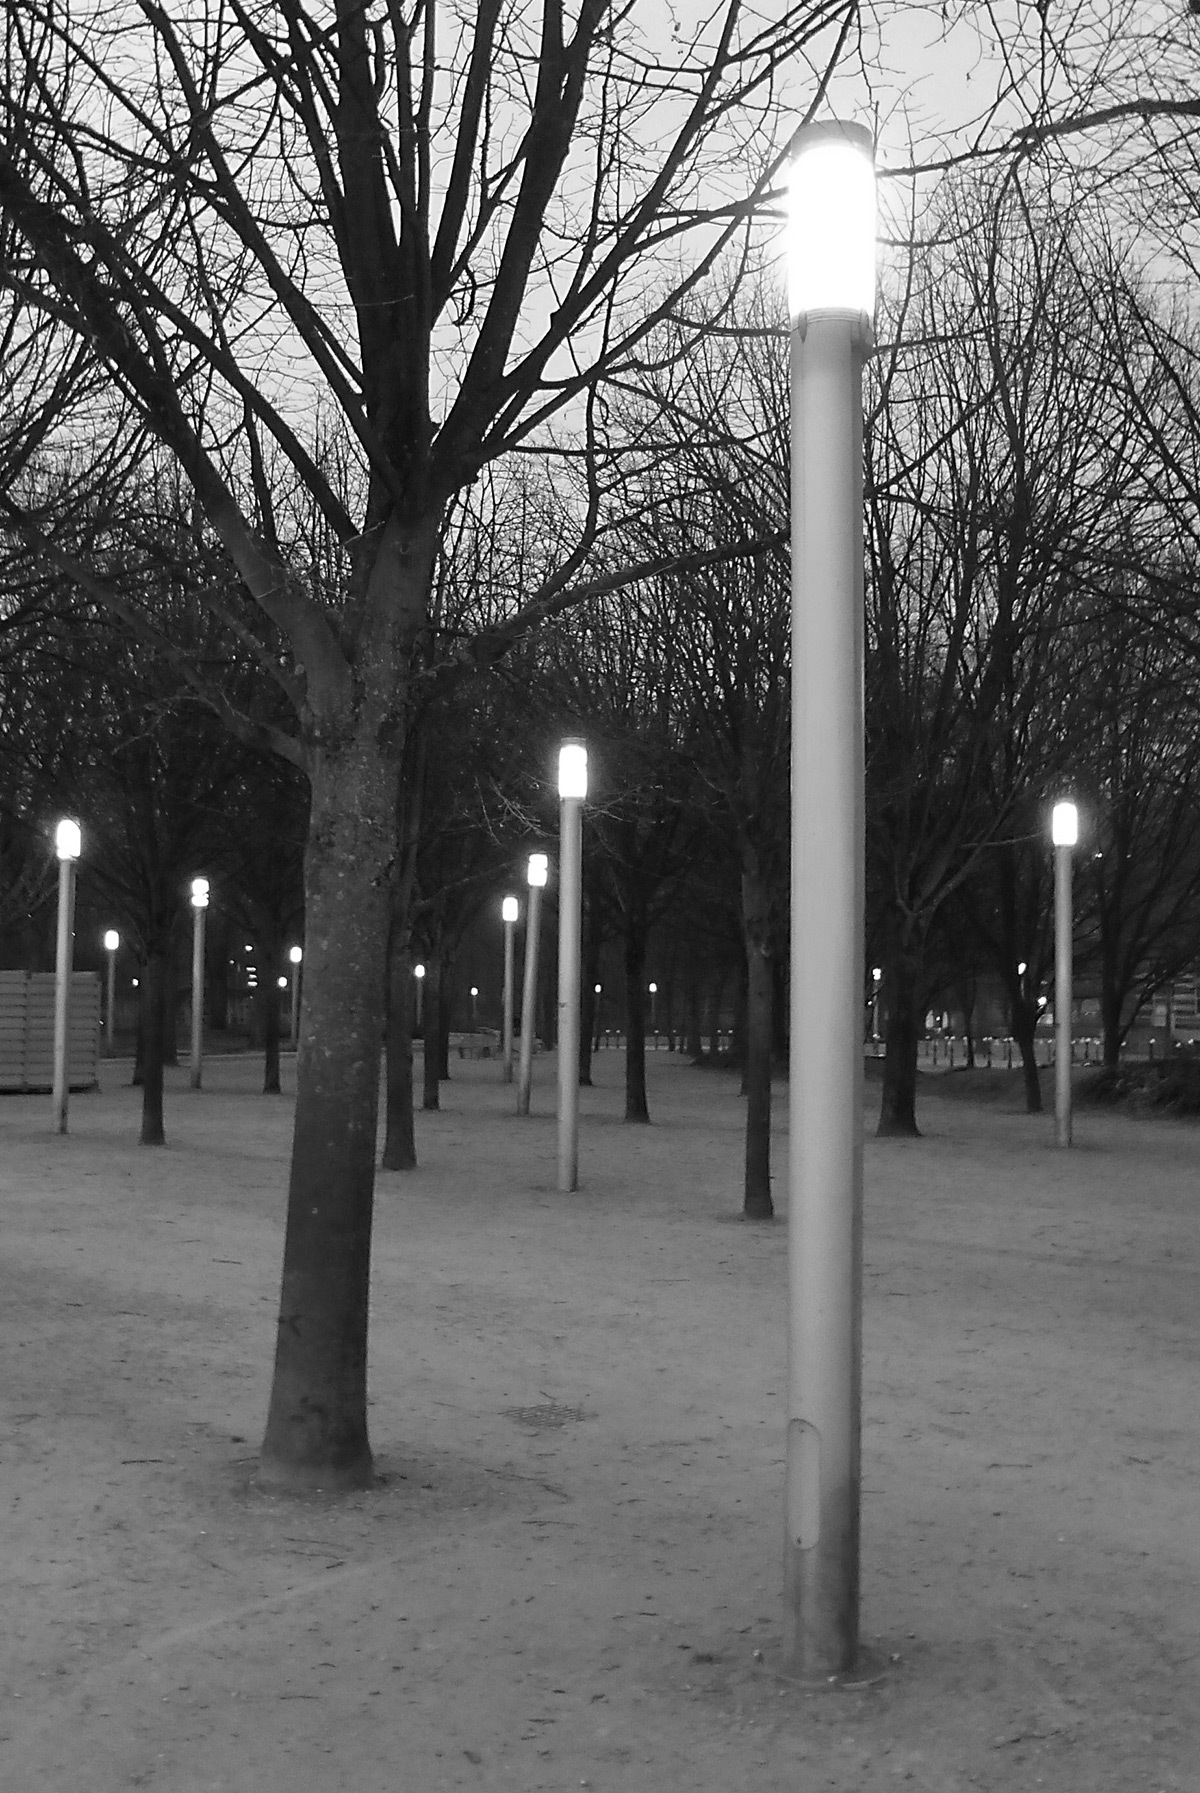 Parc de La Villette, Paris, France - Architecte : Bernard Tschumi - Concepteur lumière : Louis Clair, Light Cibles - Photo : Vincent Laganier